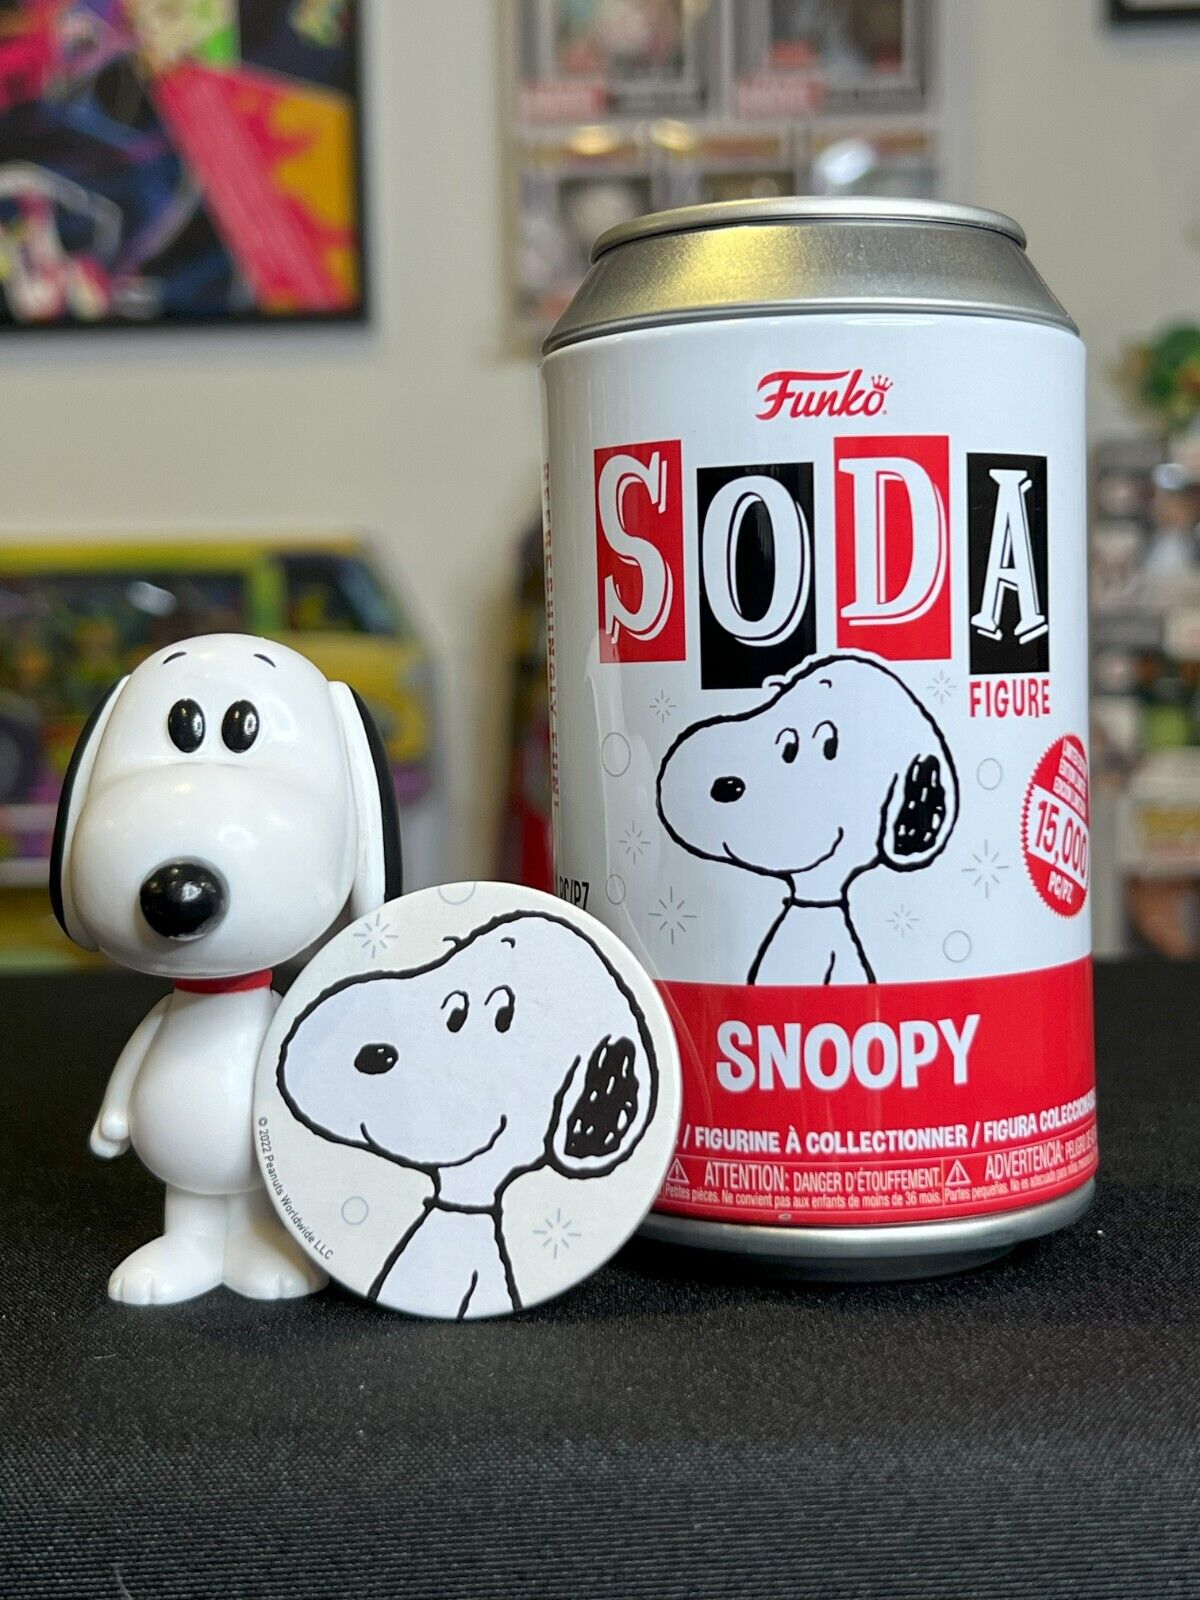 Funko Vinyl SODA: Peanuts - Snoopy - Funko Web  Exclusive COMMON /12,500